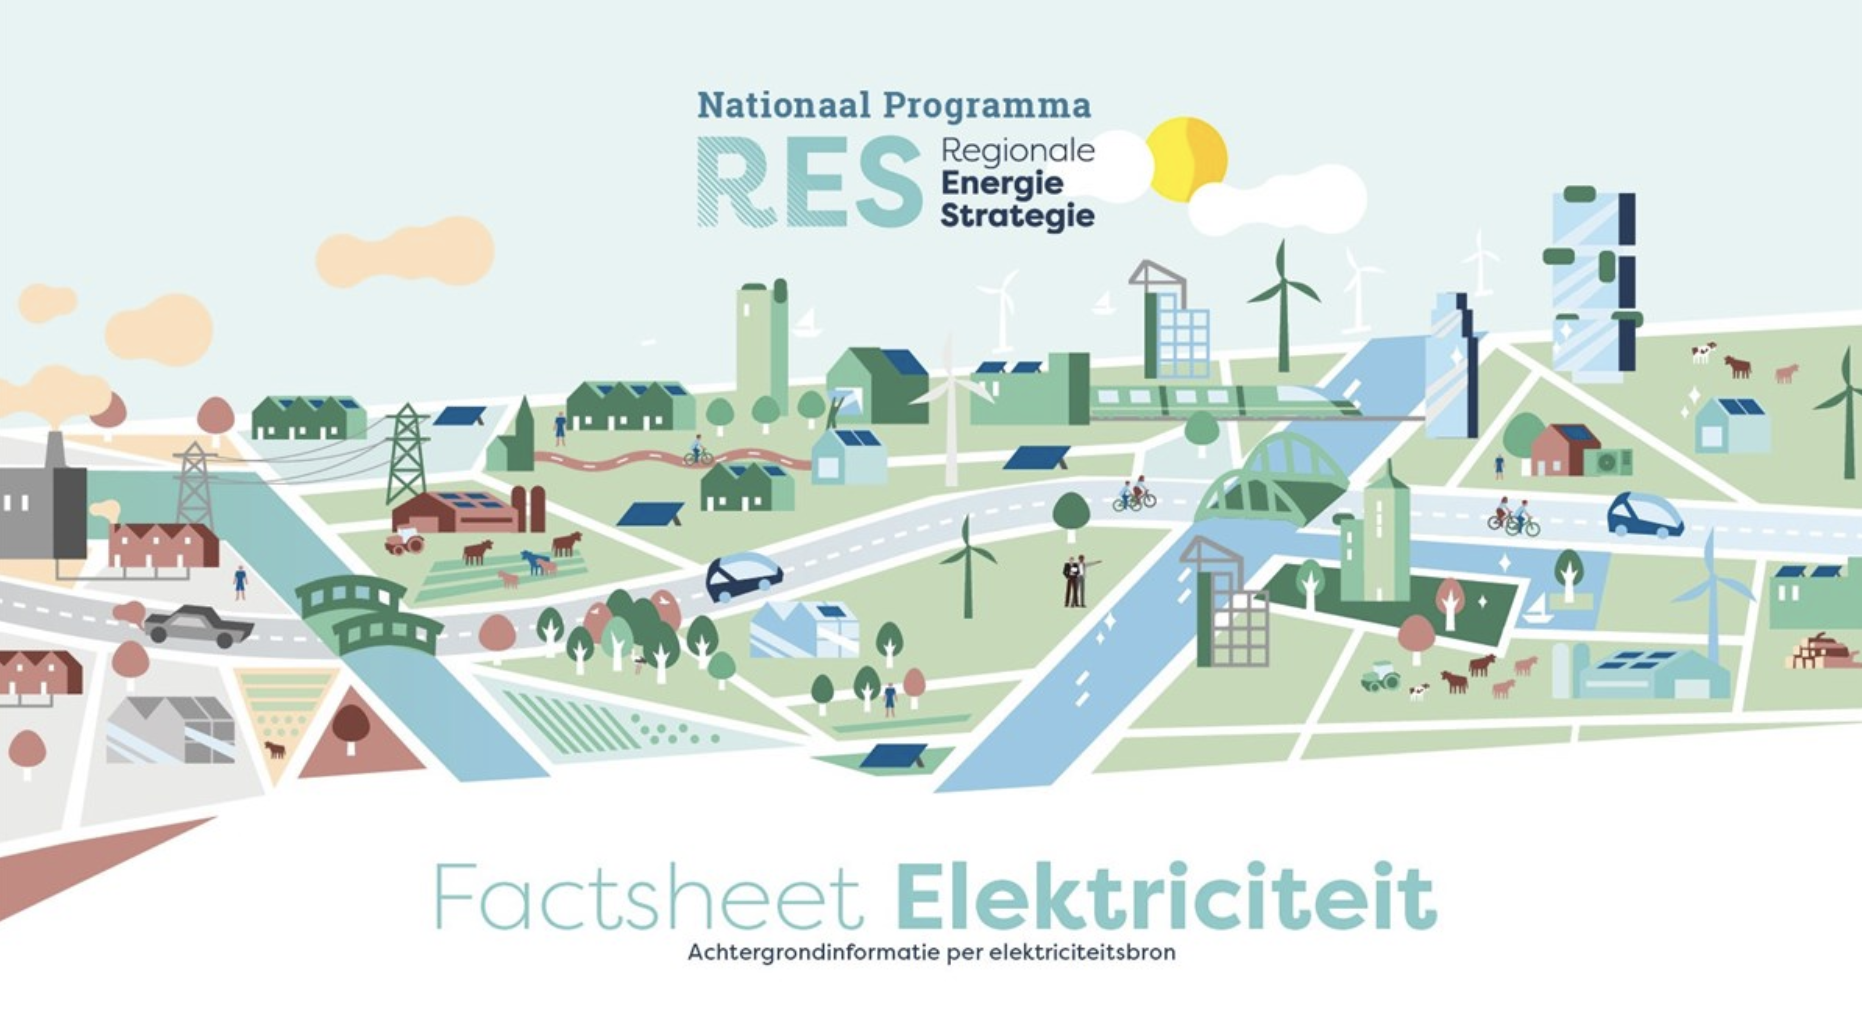 Factsheet Elektriciteit